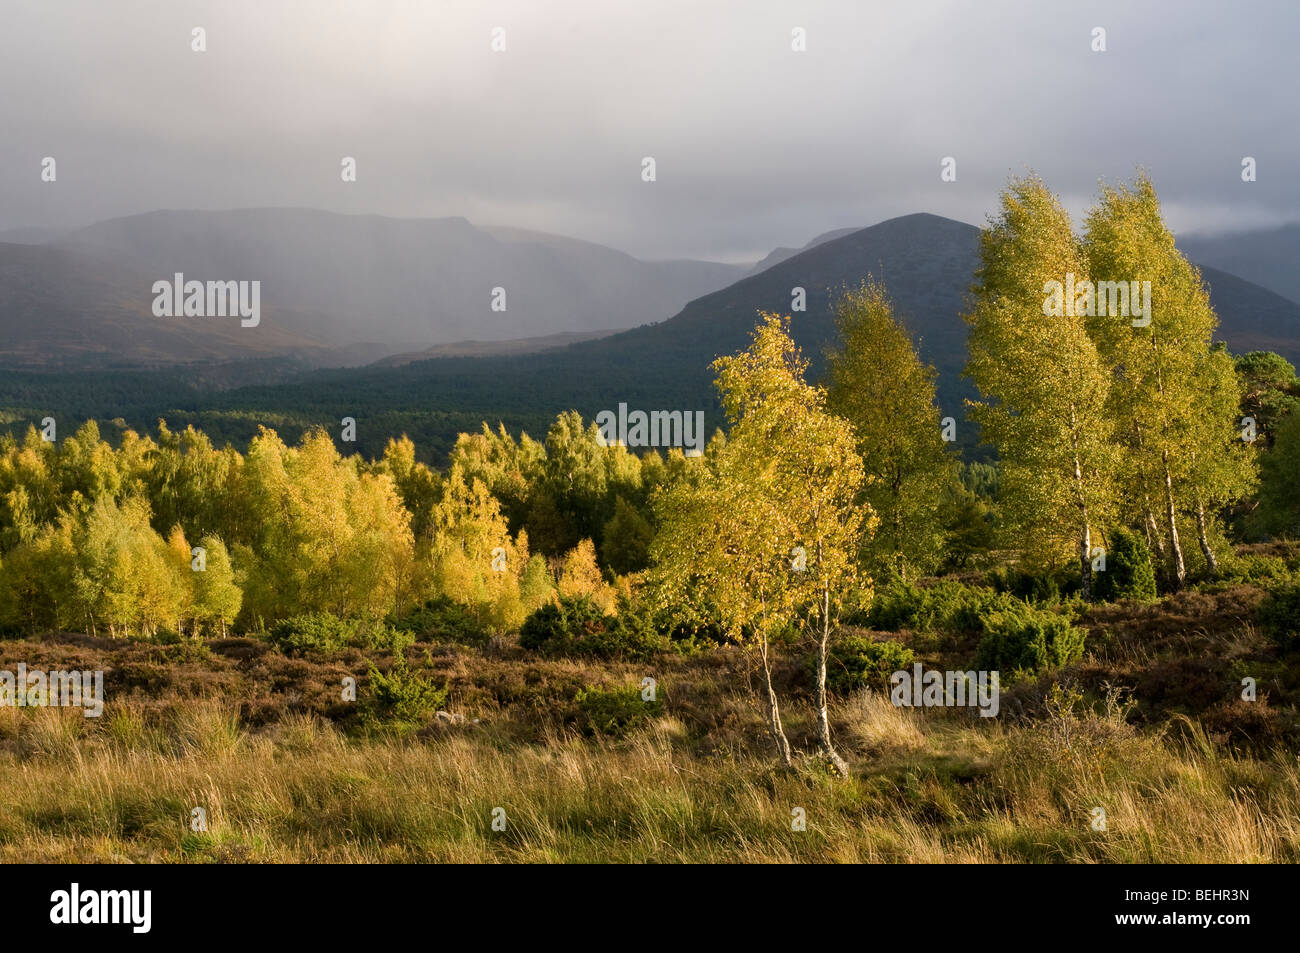 Les bouleaux sur l'automne dans le Parc National de Cairngorms Rothiemurchus Park Aviemore. Highlands écossais 5382 SCO Banque D'Images